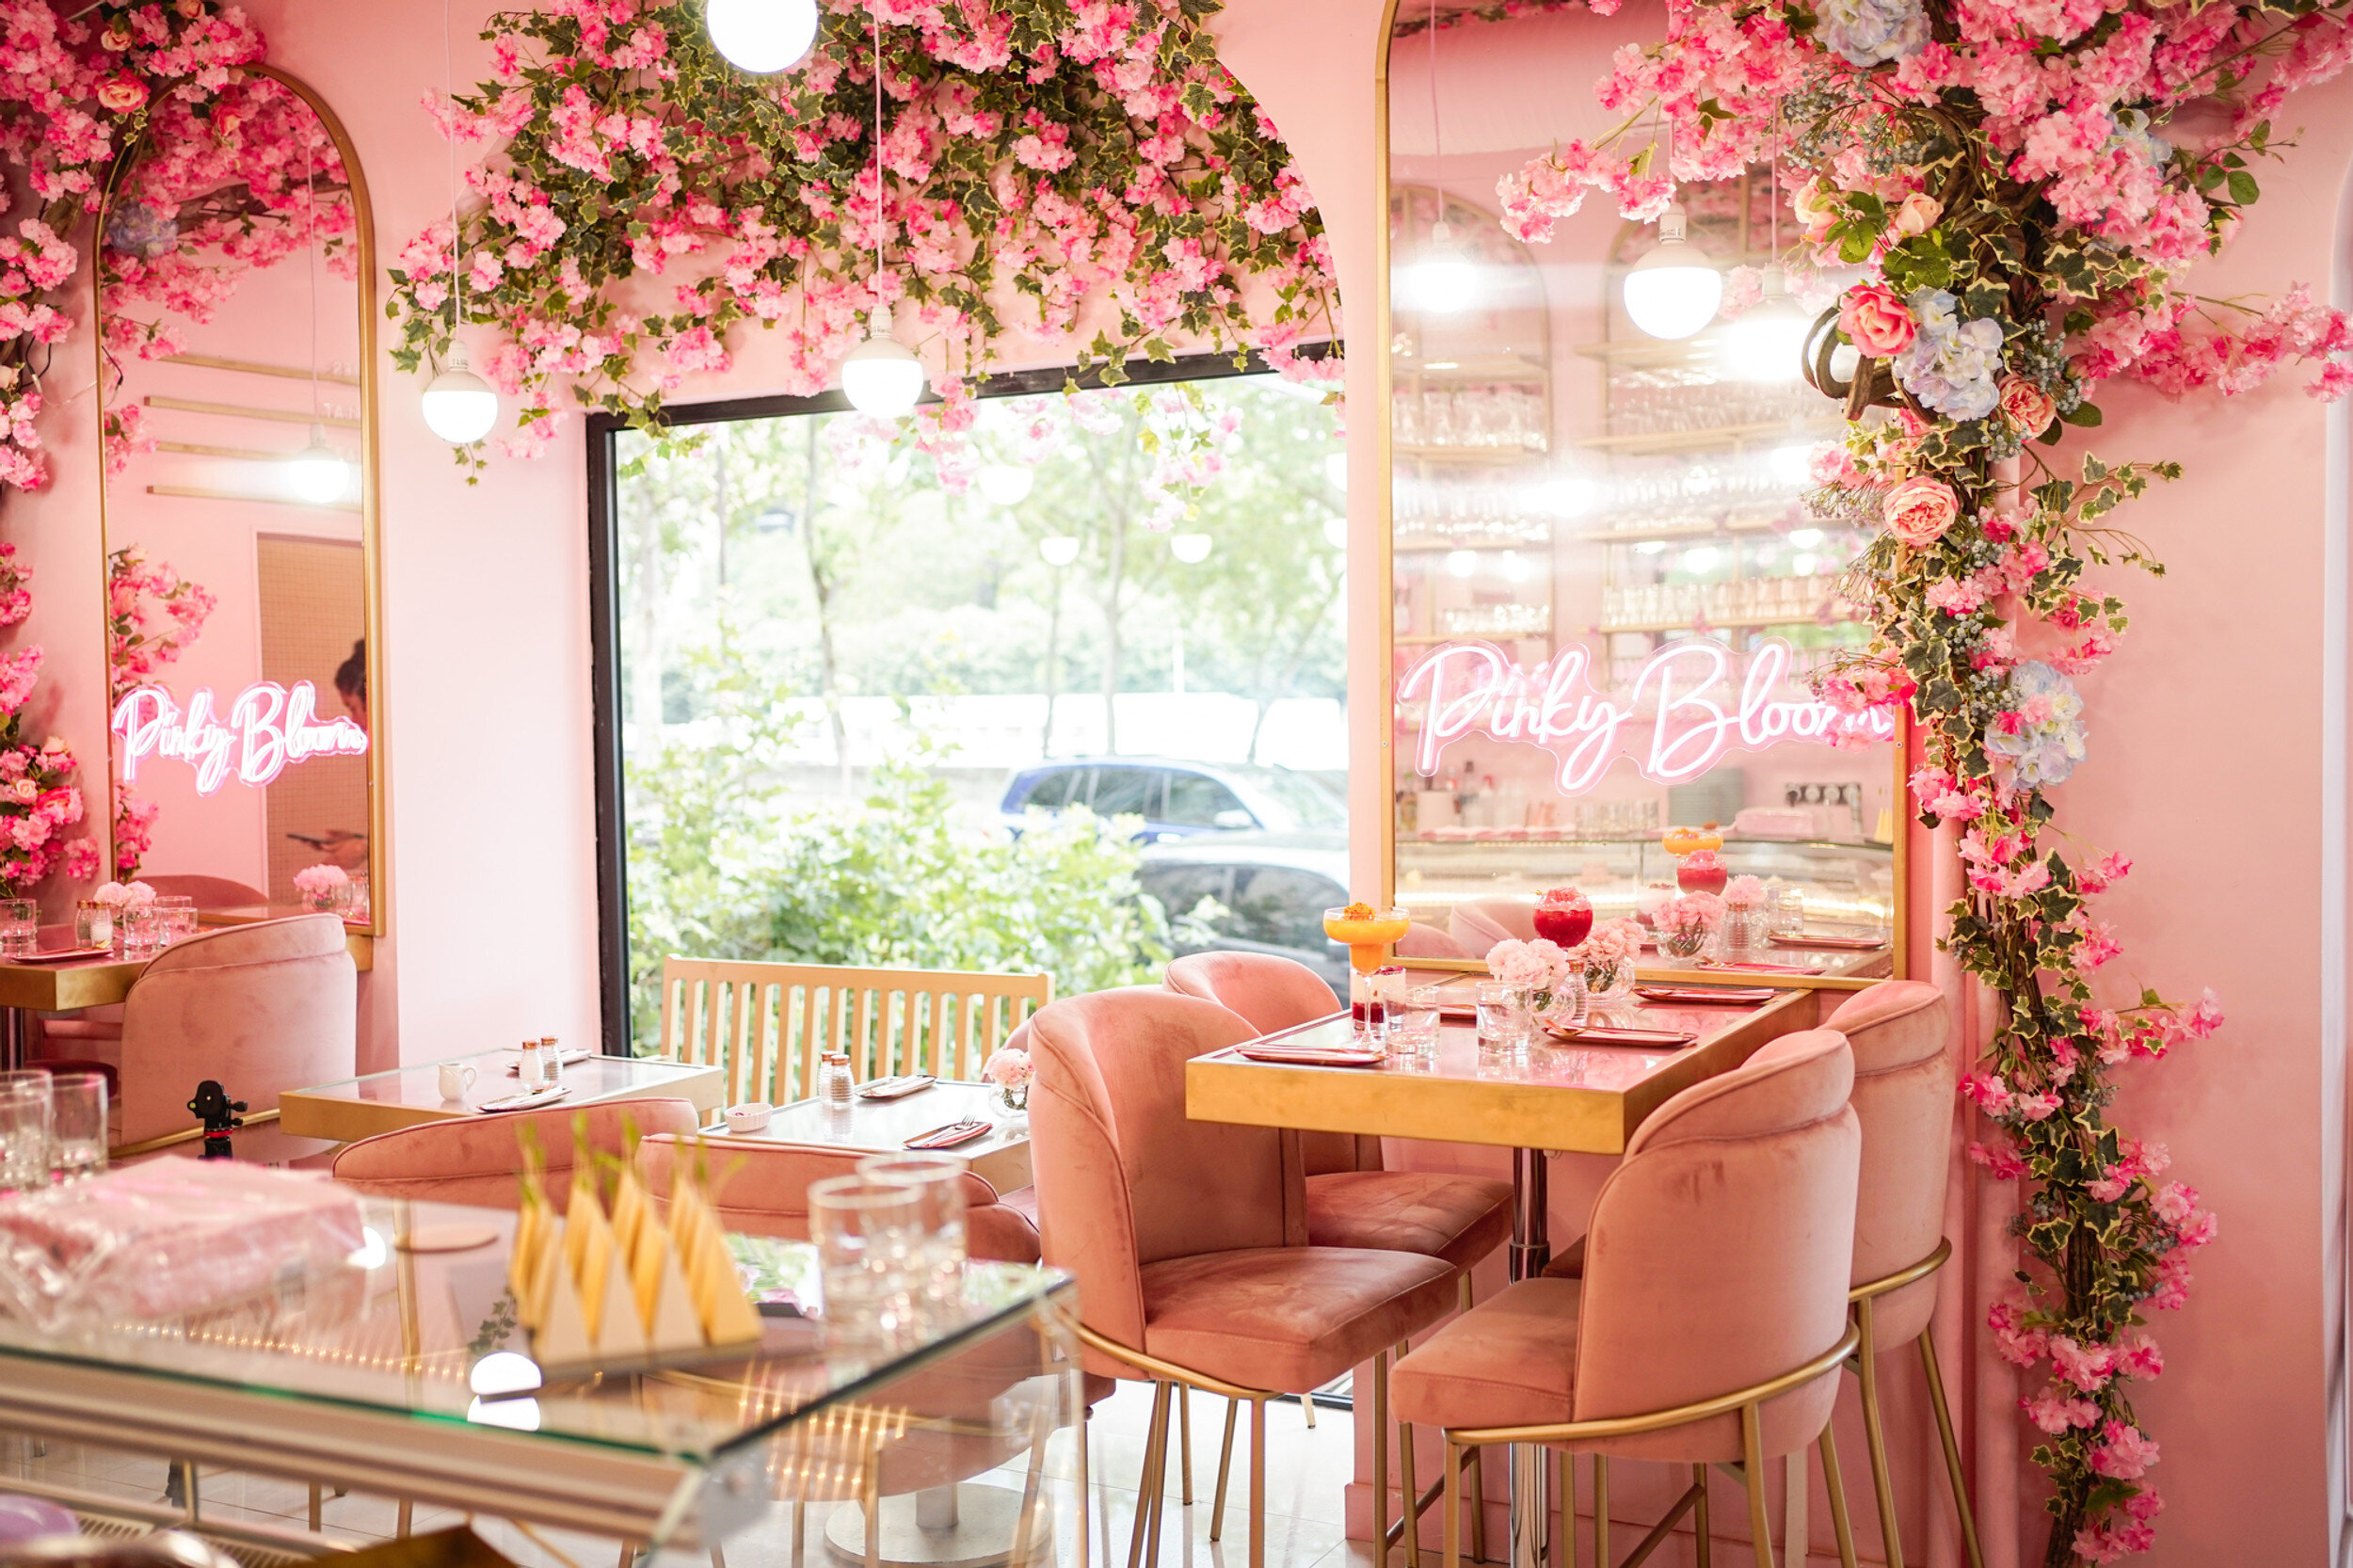 Pinky bloom restaurant window area